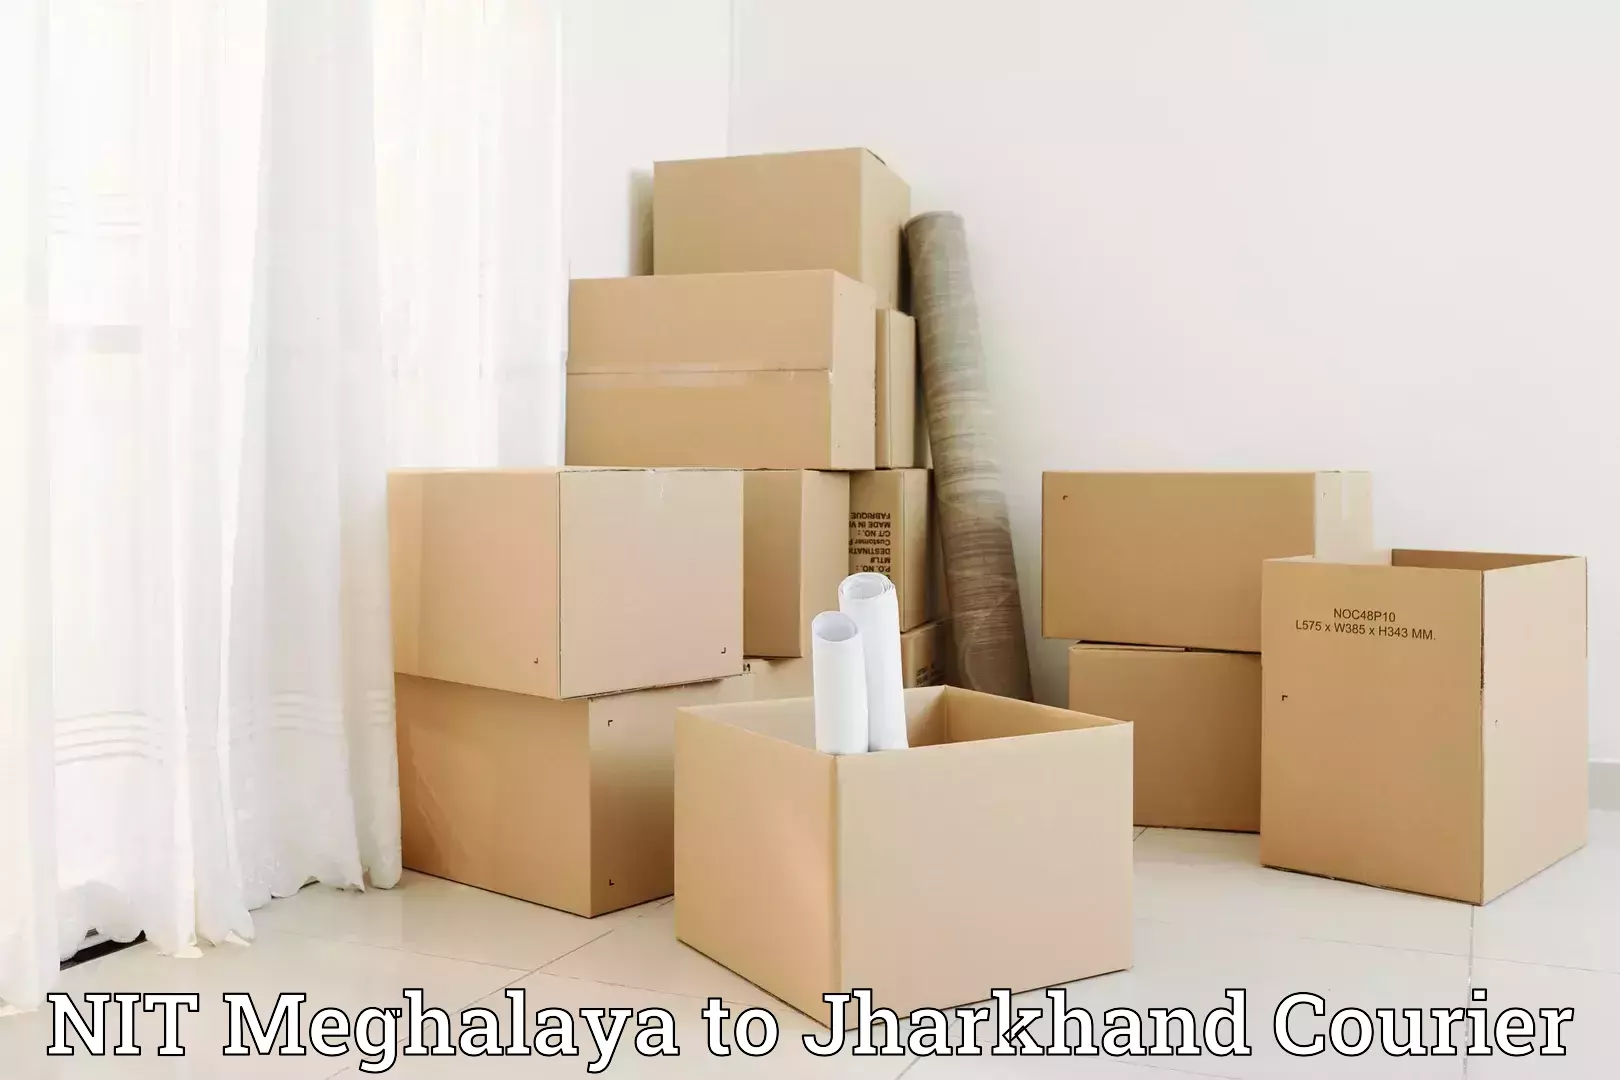 Professional moving company NIT Meghalaya to Chandwa